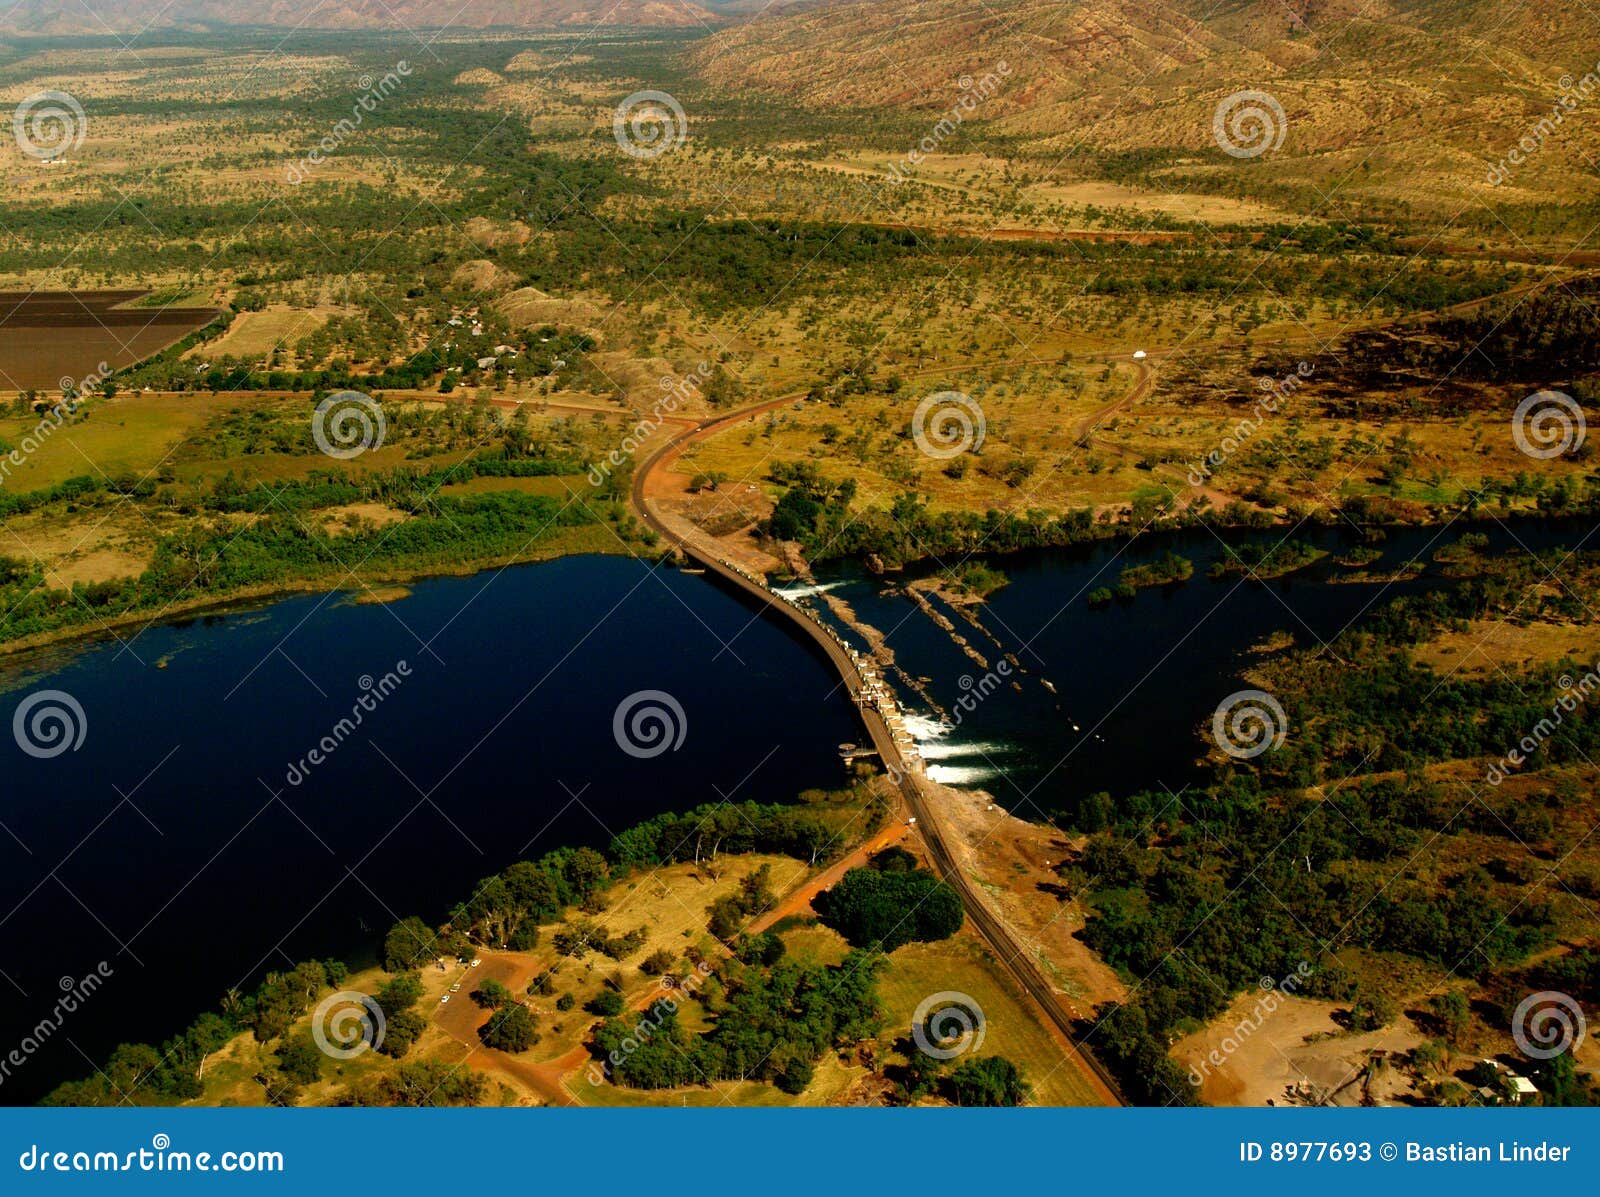 dam of kununurra